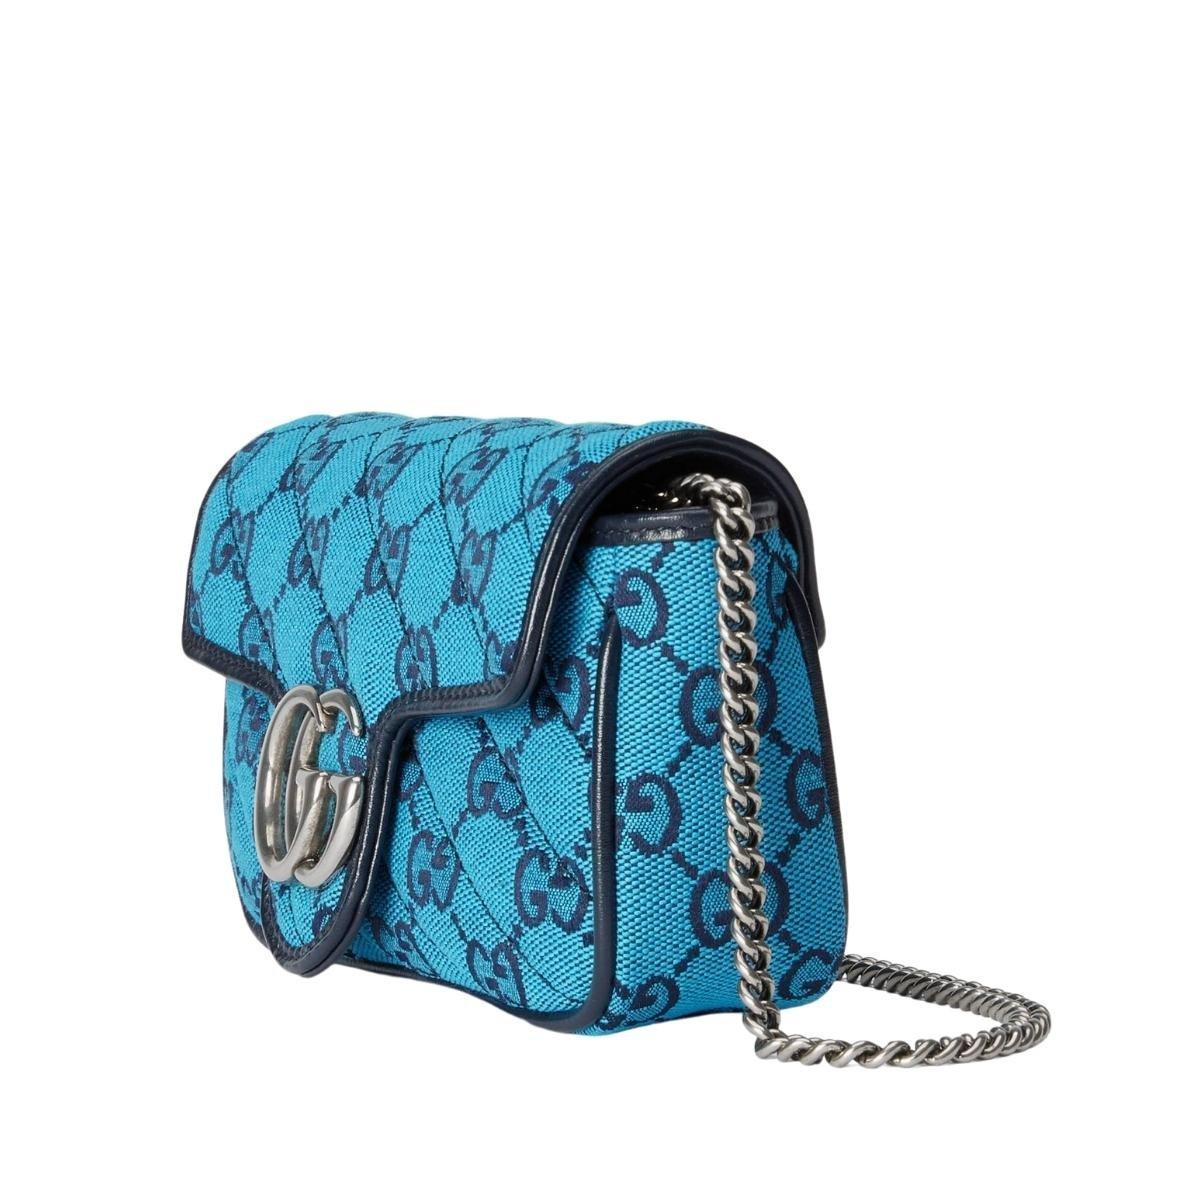 Diese GG Marmont super mini Tasche ist Teil der GG Multicolour Collection'S
Hellblauer und blauer diagonaler GG Canvas in Matelassé
Blauer Lederbesatz
Silberfarbene Hardware
Angebrachter Schlüsselring, der an einer separaten Tasche befestigt werden